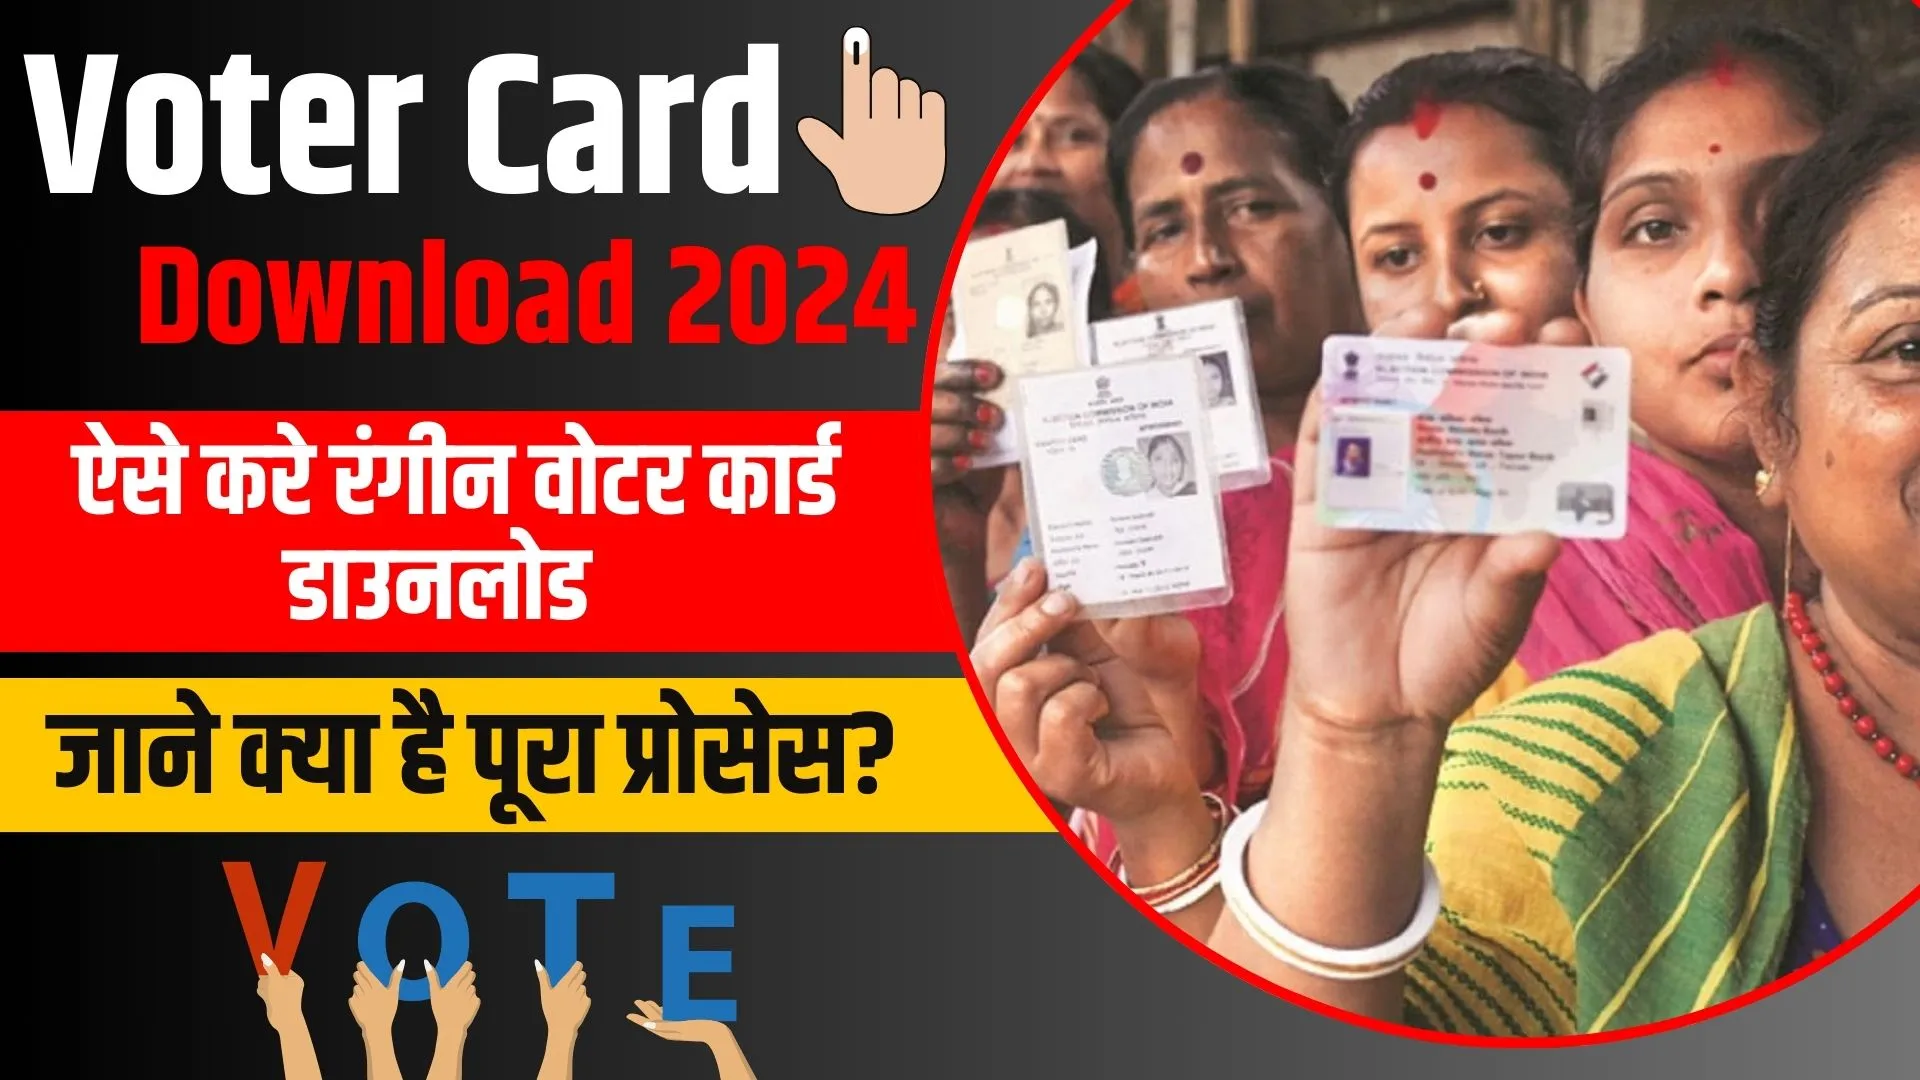 Voter Card Download Online 2024: सिर्फ 1 क्लिक मे ऐसे करे रंगीन वोटर कार्ड डाउनलोड ऑनलाइन, जाने क्या है पूरा प्रोसेस?